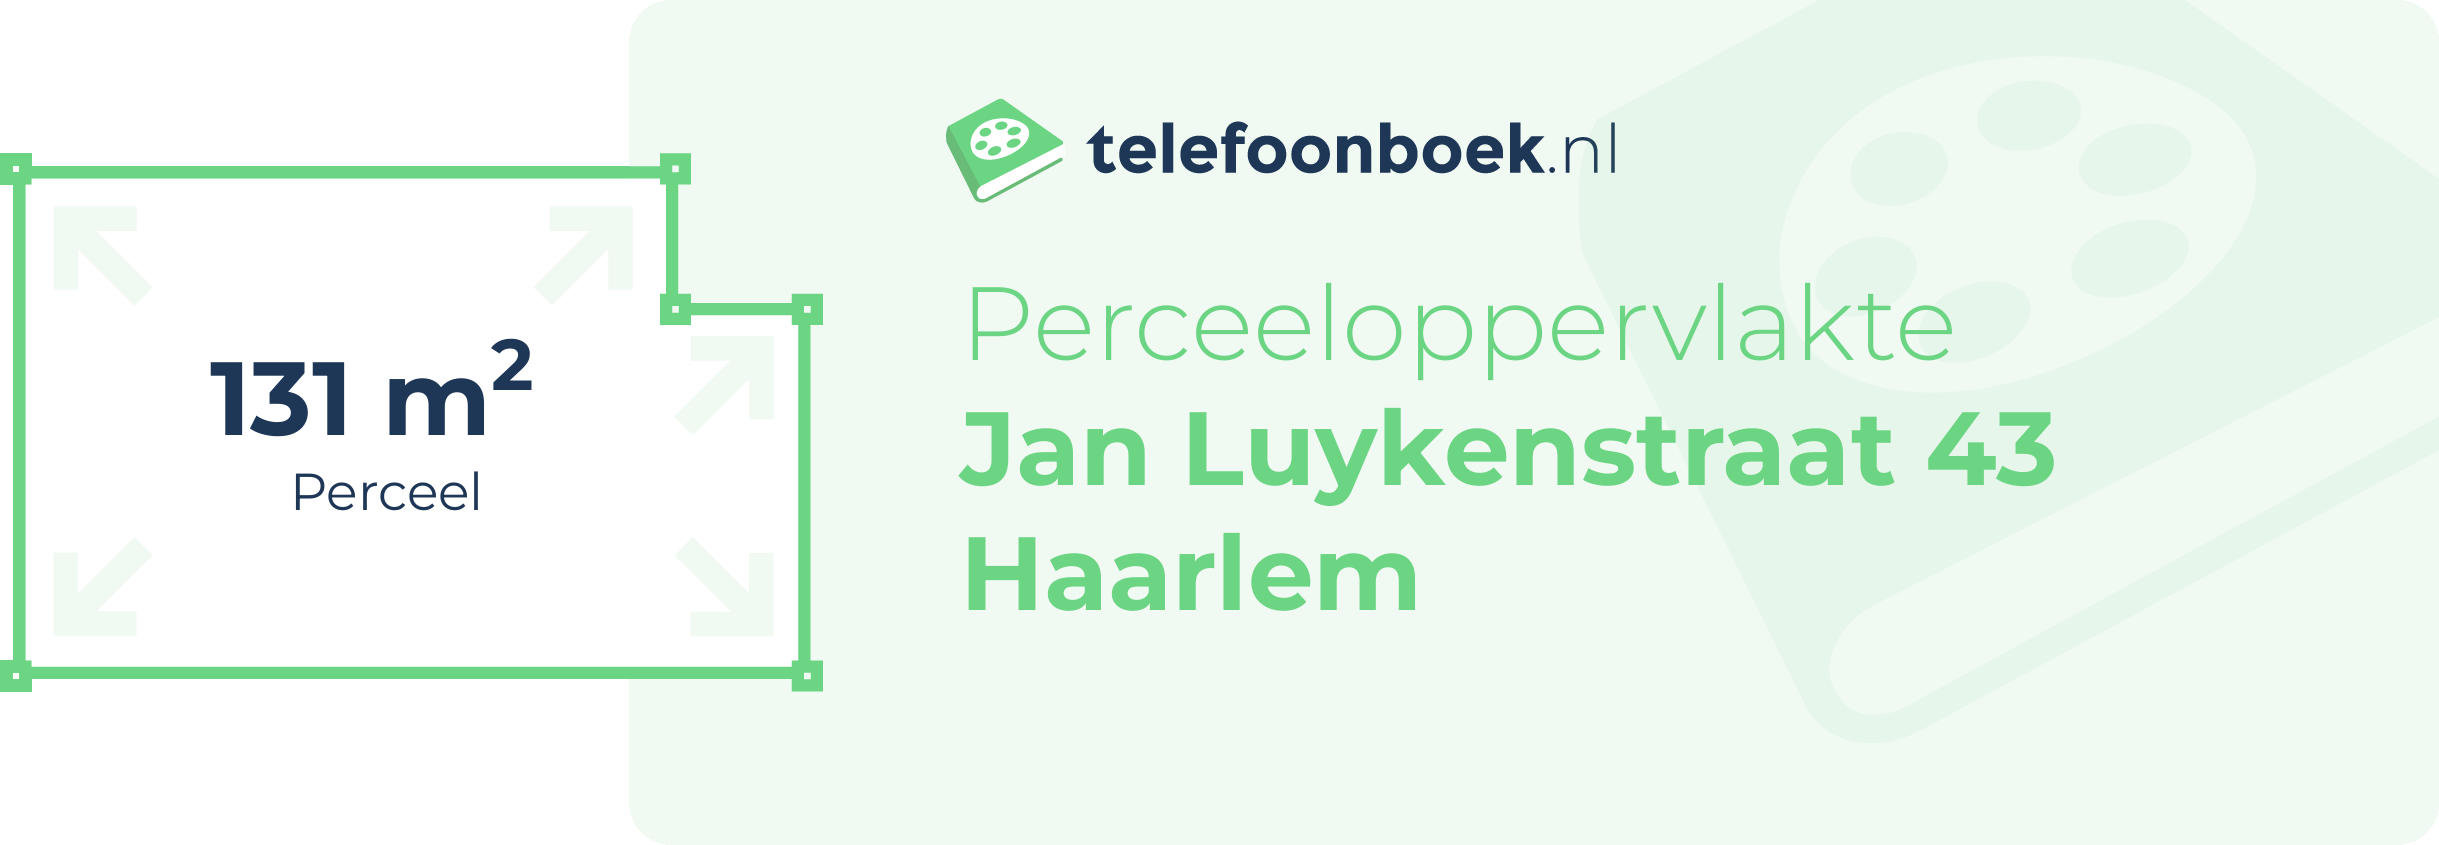 Perceeloppervlakte Jan Luykenstraat 43 Haarlem